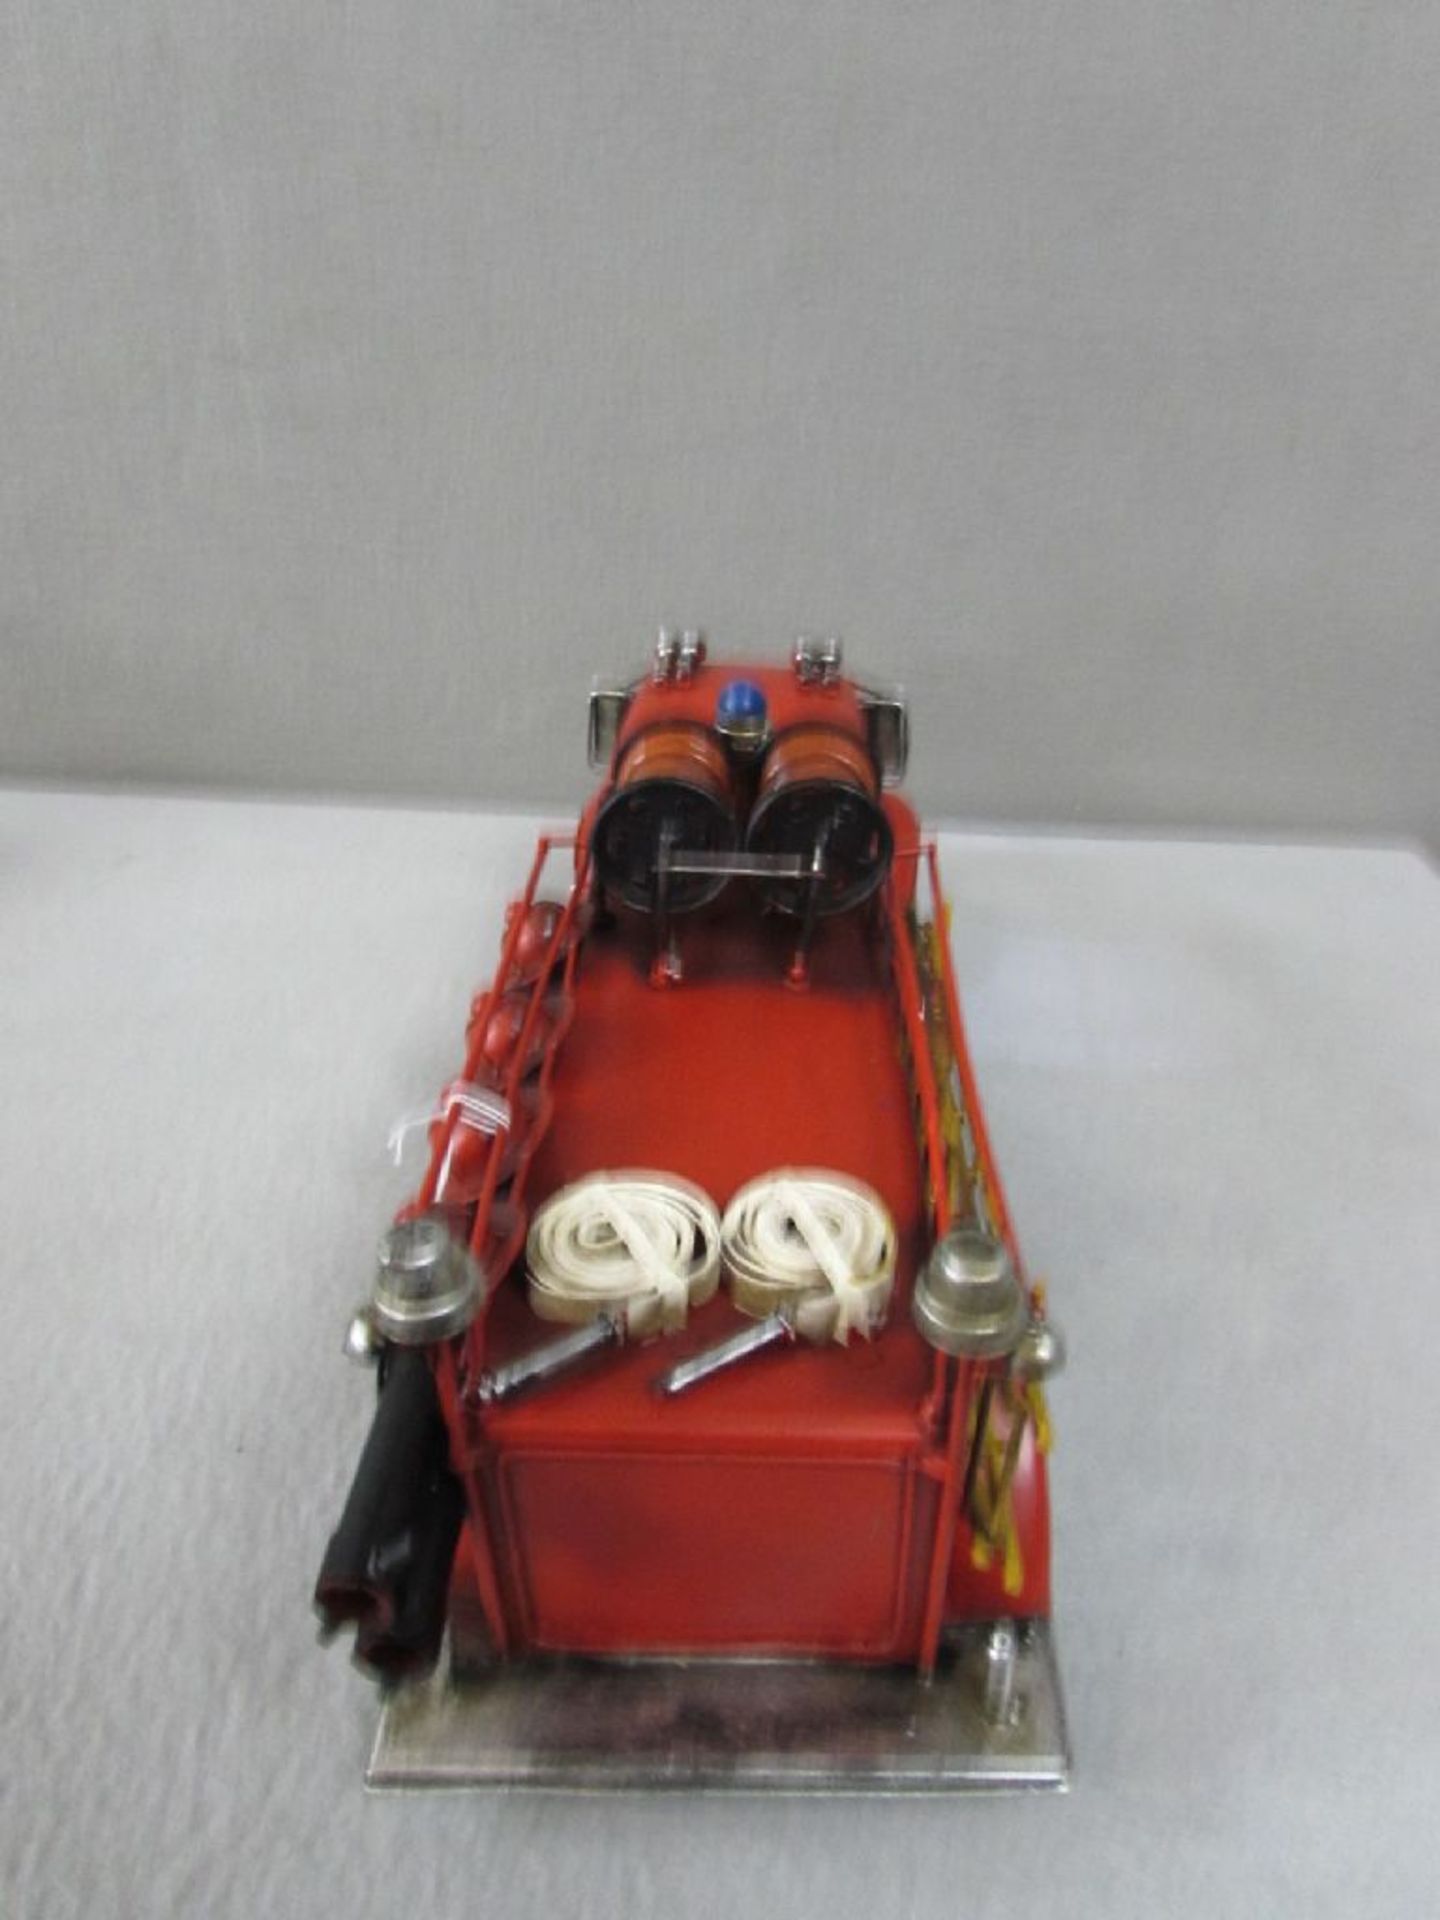 Feuerwehrmodell Blech U.S.A 51 cm länge - Bild 3 aus 4